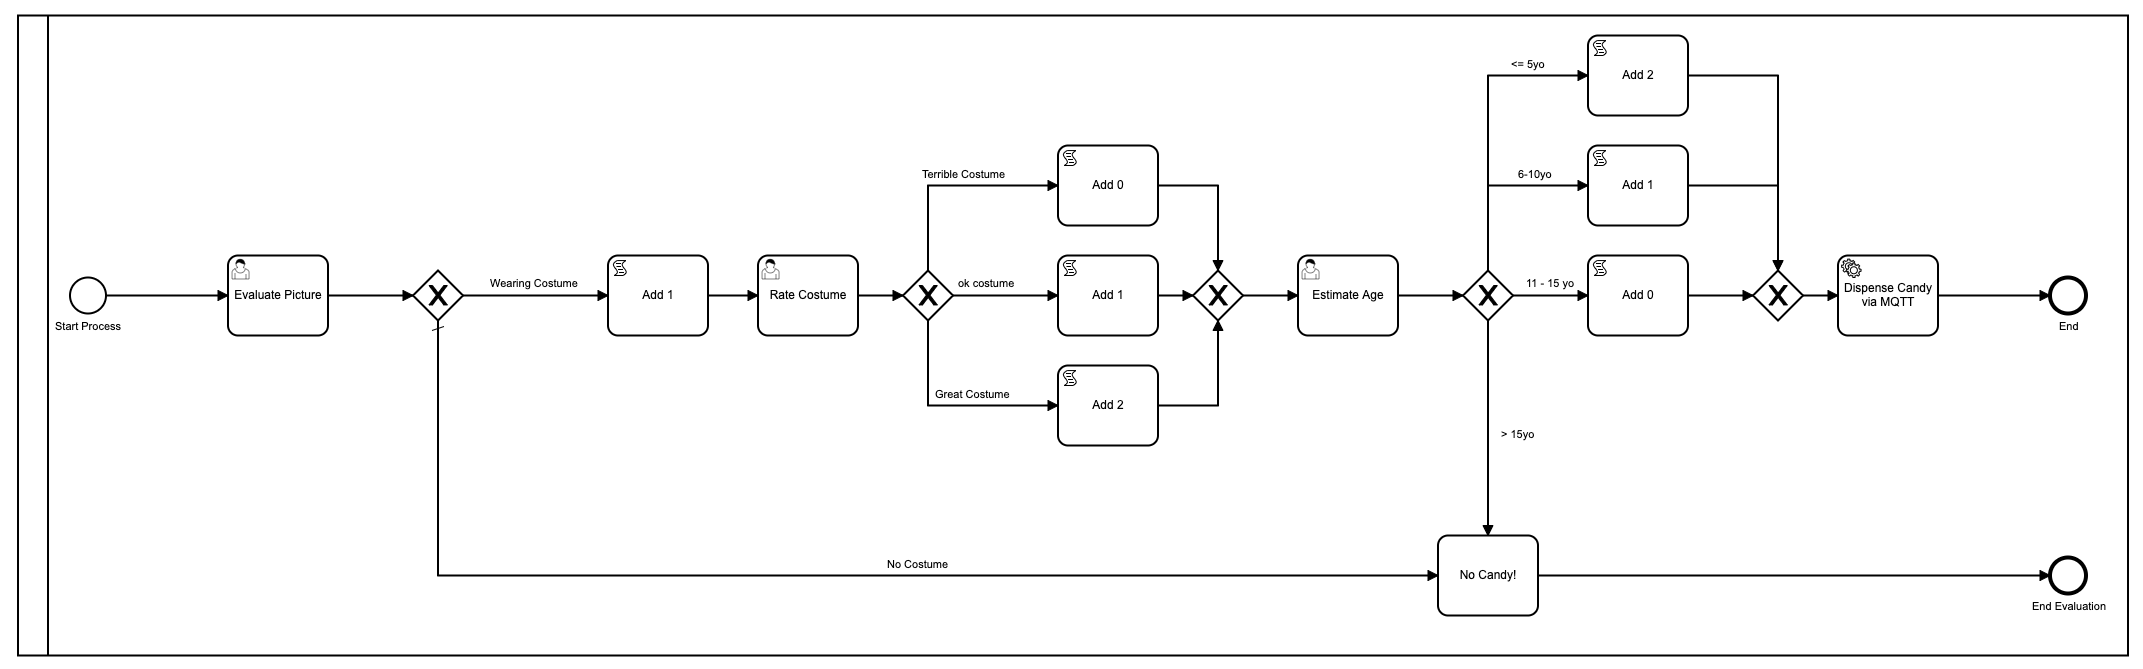 BPMN-Modell mit mehreren Schritten und 3 menschlichen Aufgaben